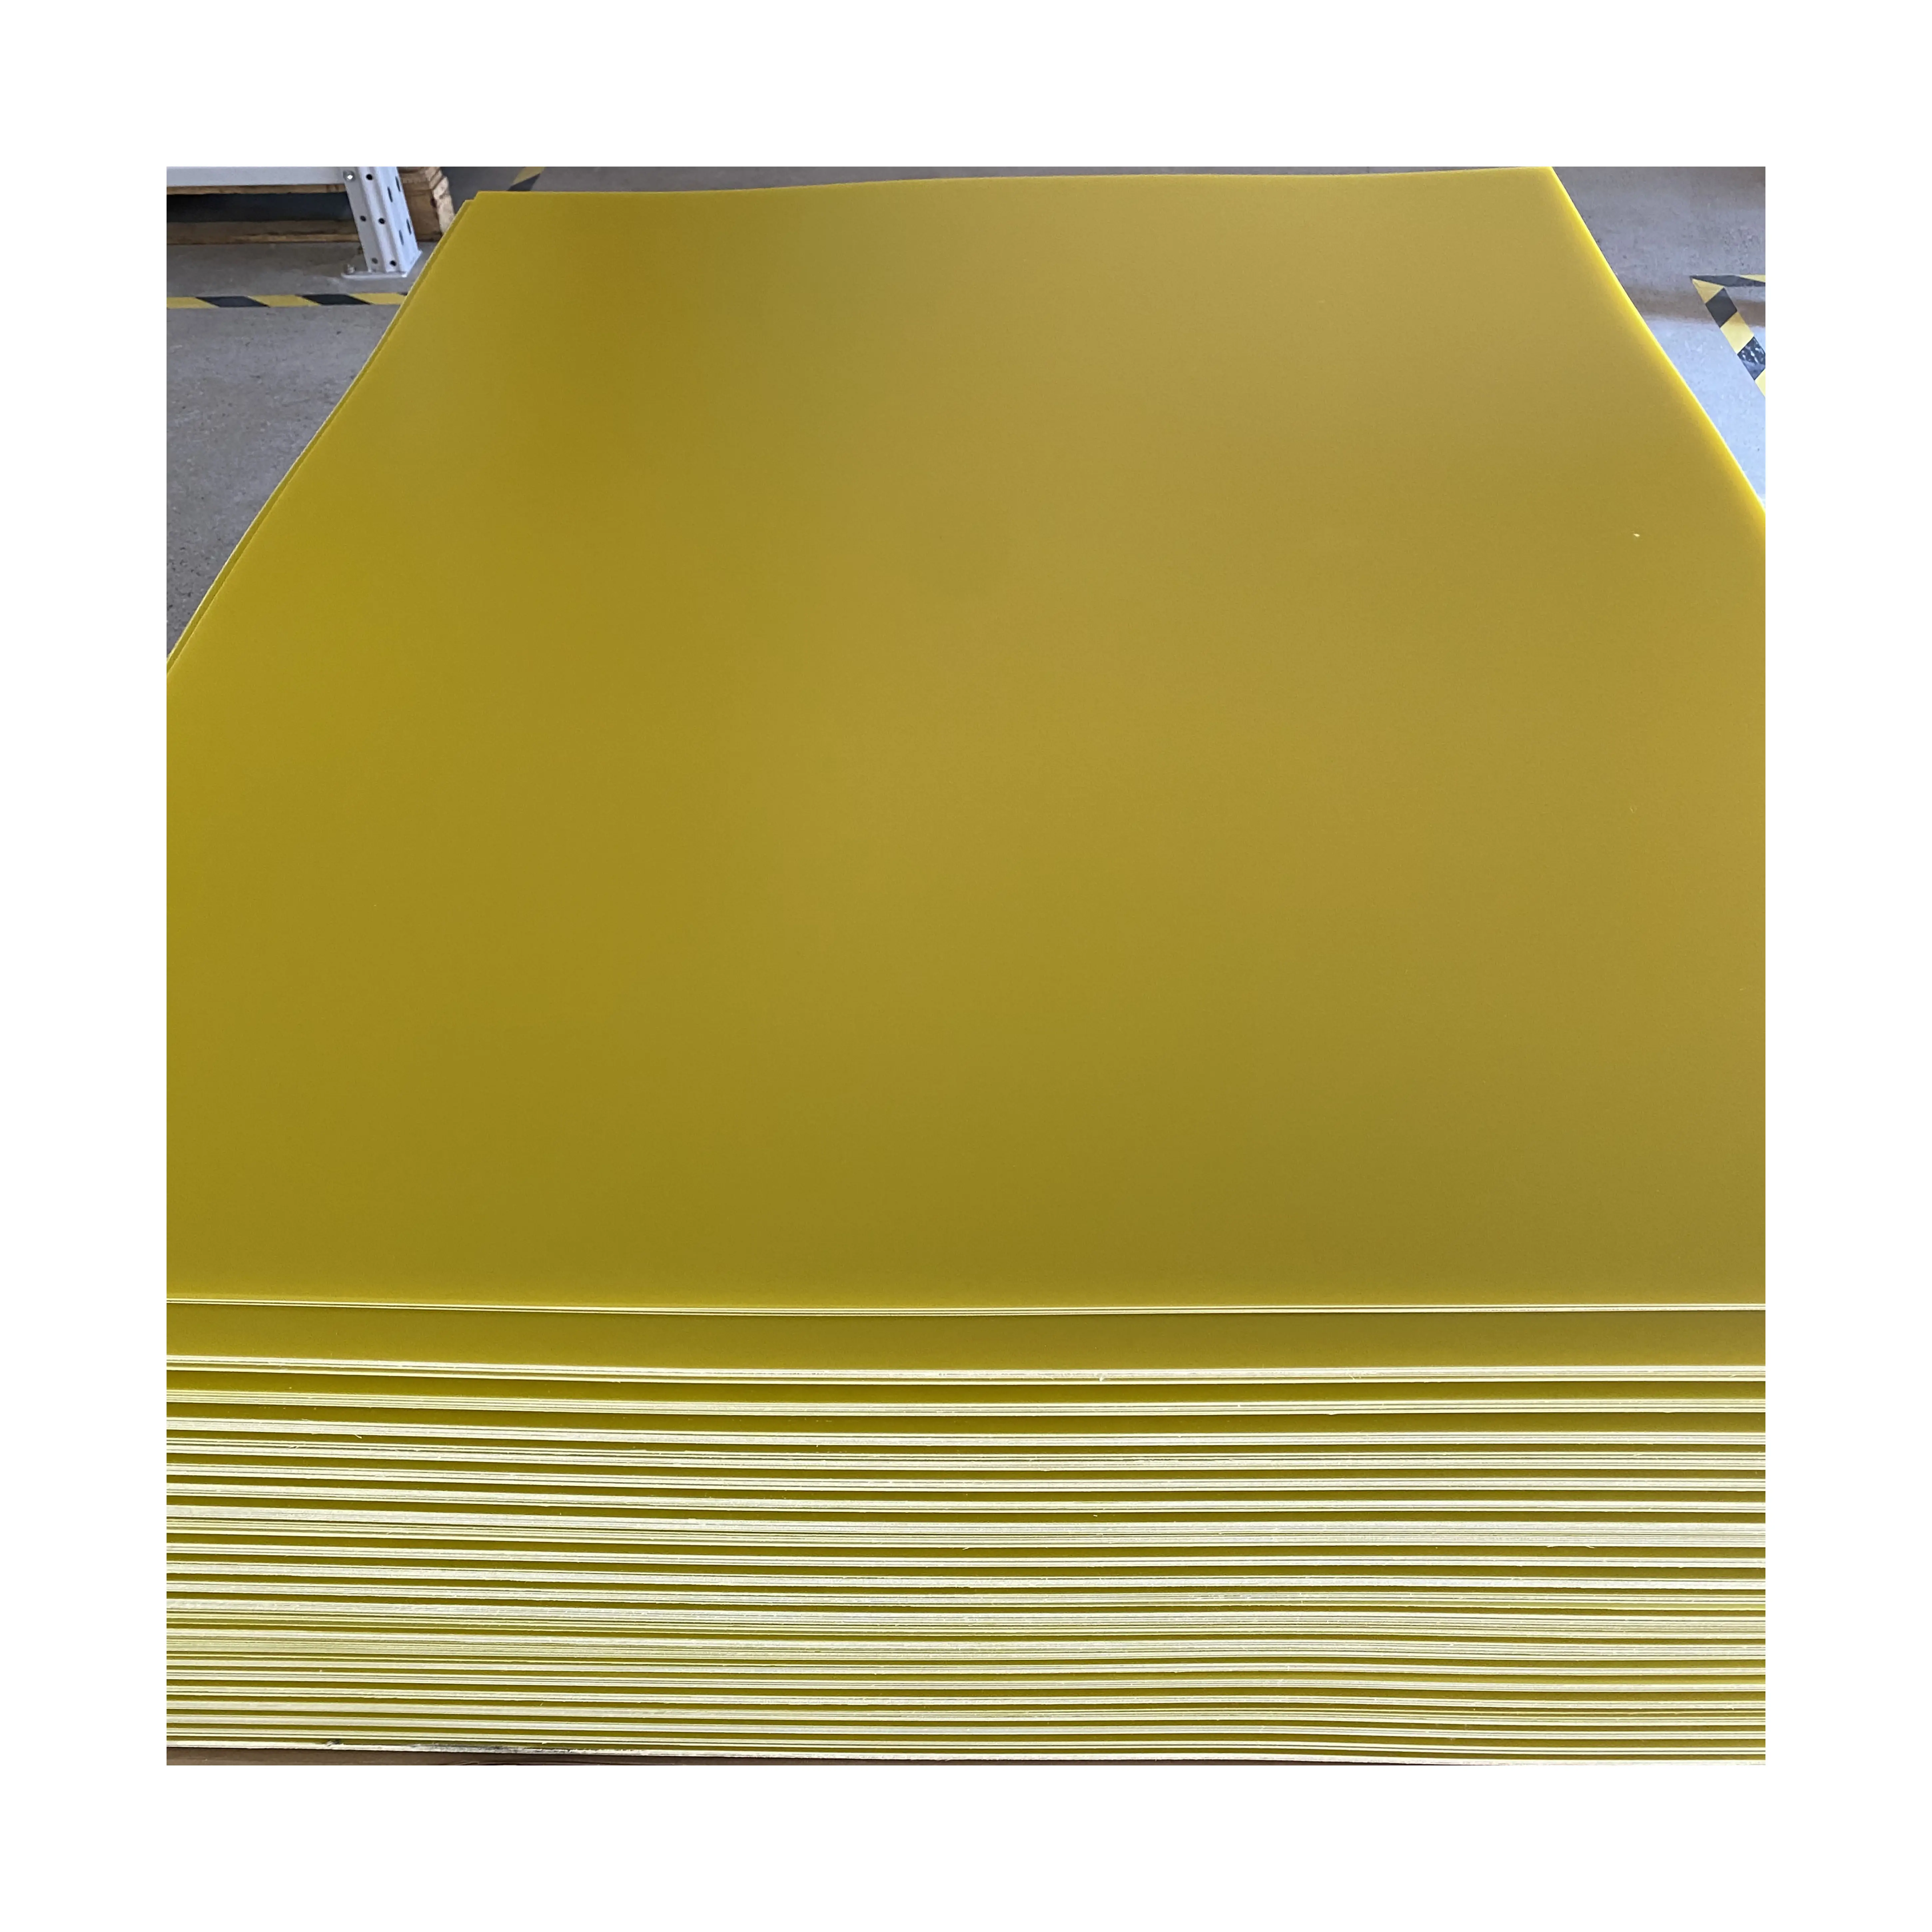 L'usine est spécialisée dans la production de panneaux de résine époxy jaune FR4 5.0mm et de panneaux de fibre de verre 5.0mm